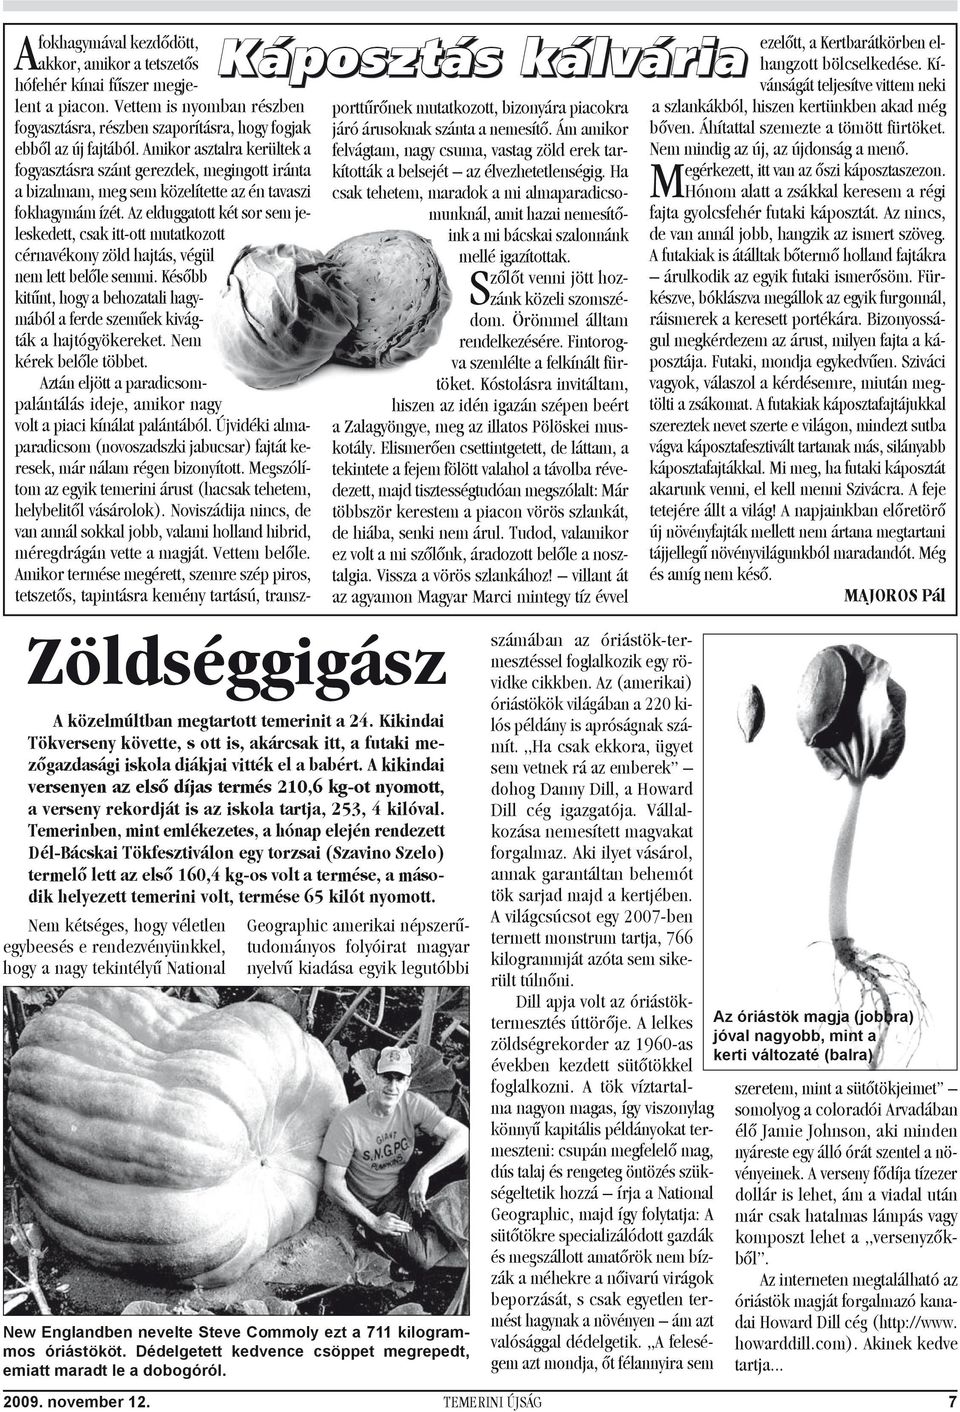 Temerinben, mint emlékezetes, a hónap elején rendezett Dél-Bácskai Tökfesztiválon egy torzsai (Szavino Szelo) termelő lett az első 160,4 kg-os volt a termése, a második helyezett temerini volt,